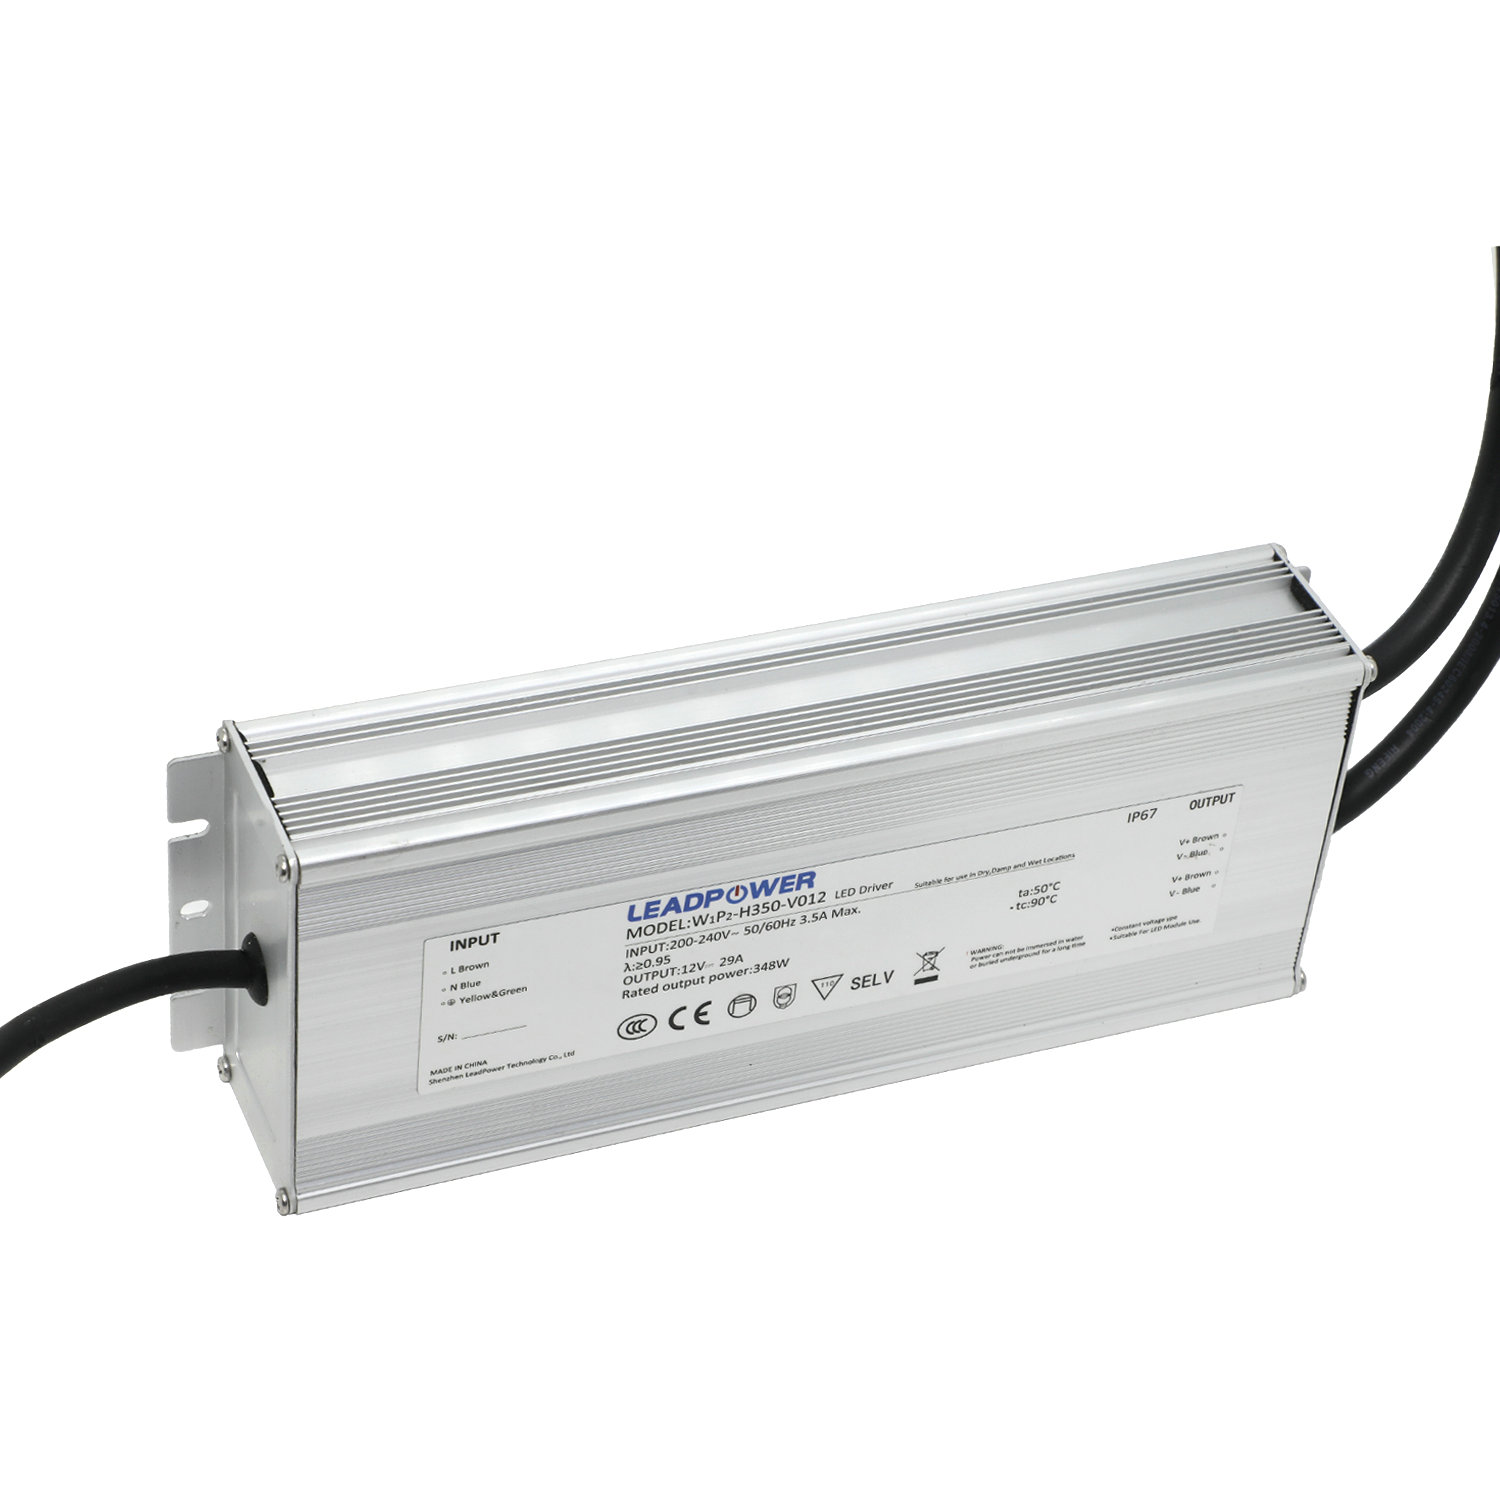 WBP-H350 Waterproof LED Power Supply